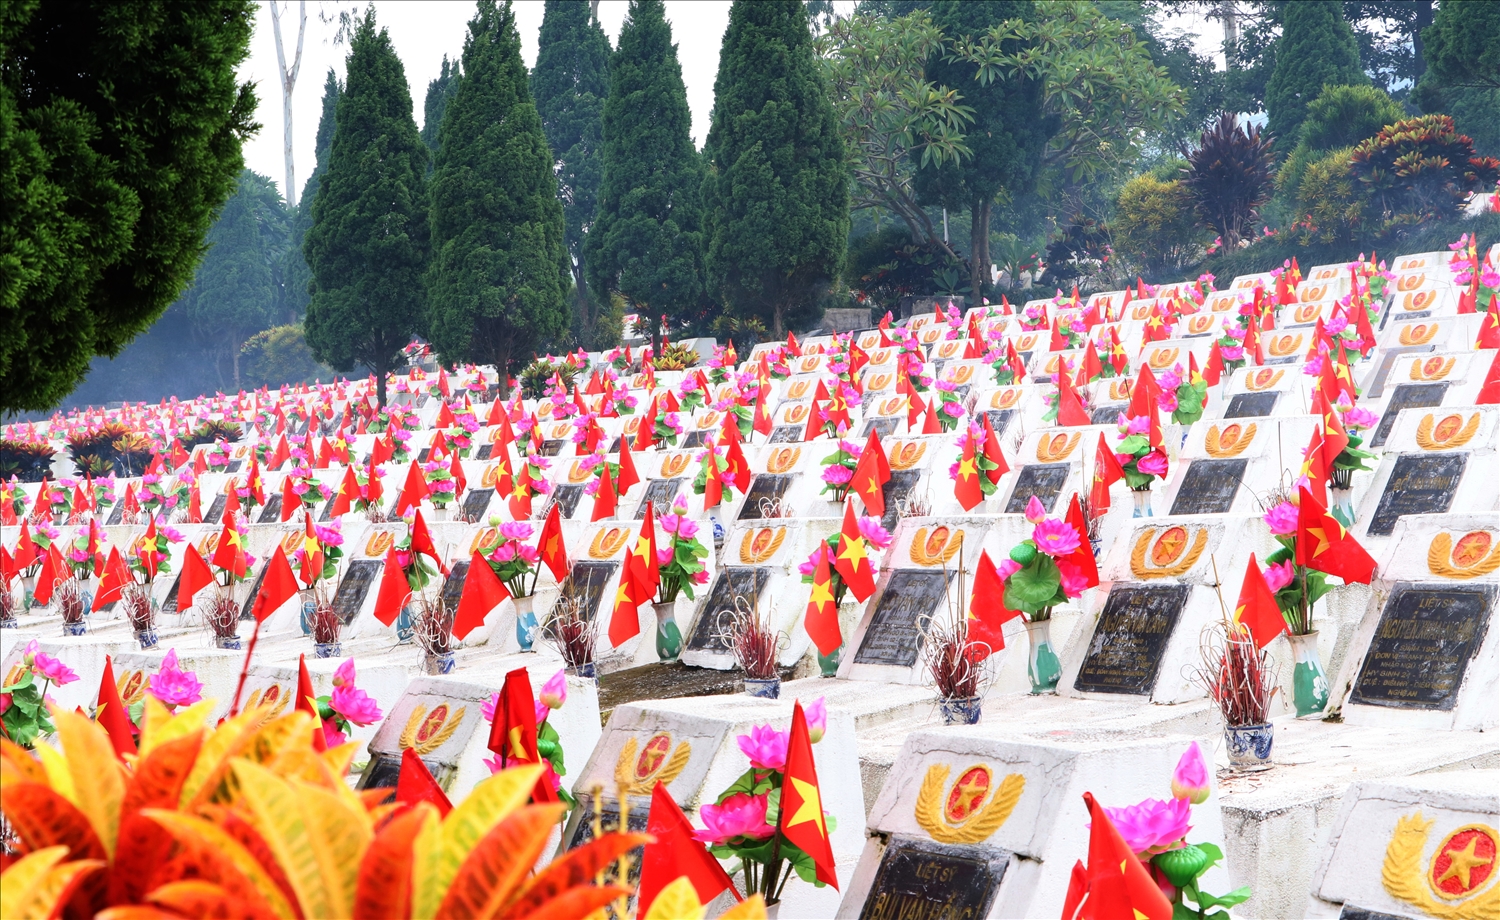 Nghĩa trang liệt sĩ quốc gia Vị Xuyên - nơi an nghỉ của hơn 1.800 liệt sĩ cùng phần mộ tập thể các liệt sĩ đã hy sinh trong cuộc chiến đấu bảo vệ biên giới phía bắc của Tổ quốc